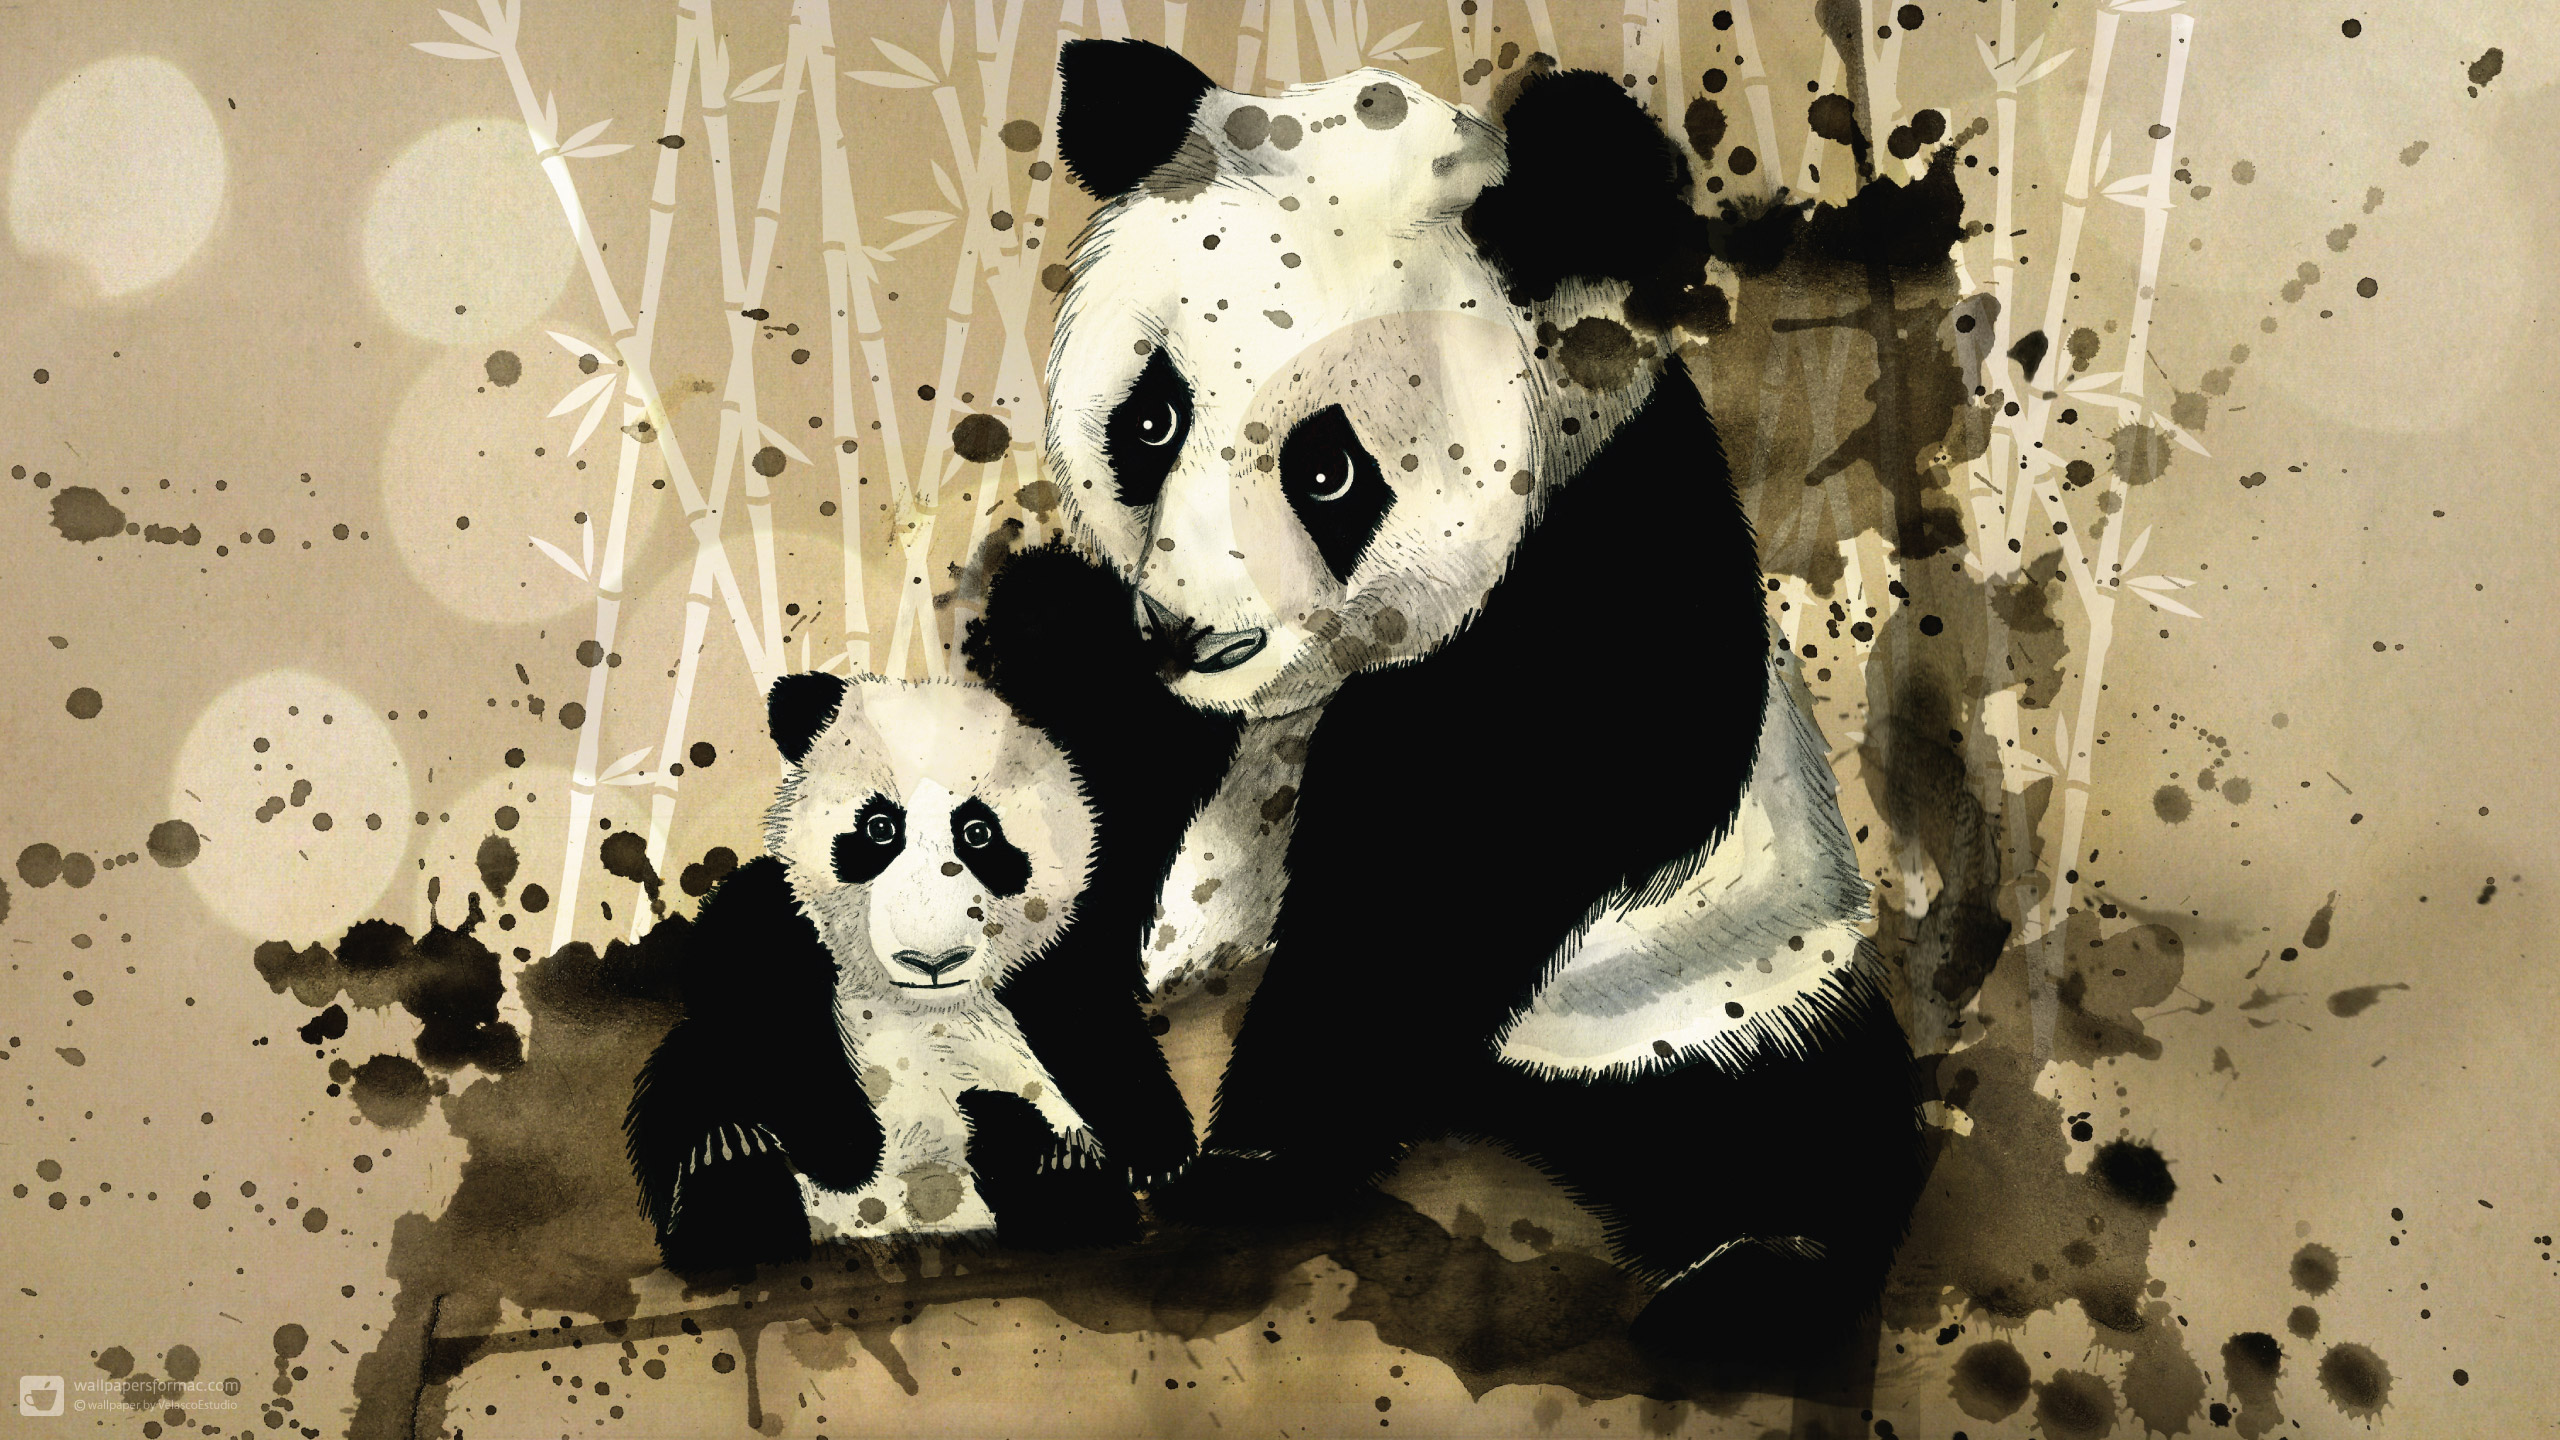 Скачать обои бесплатно Животные, Панда картинка на рабочий стол ПК